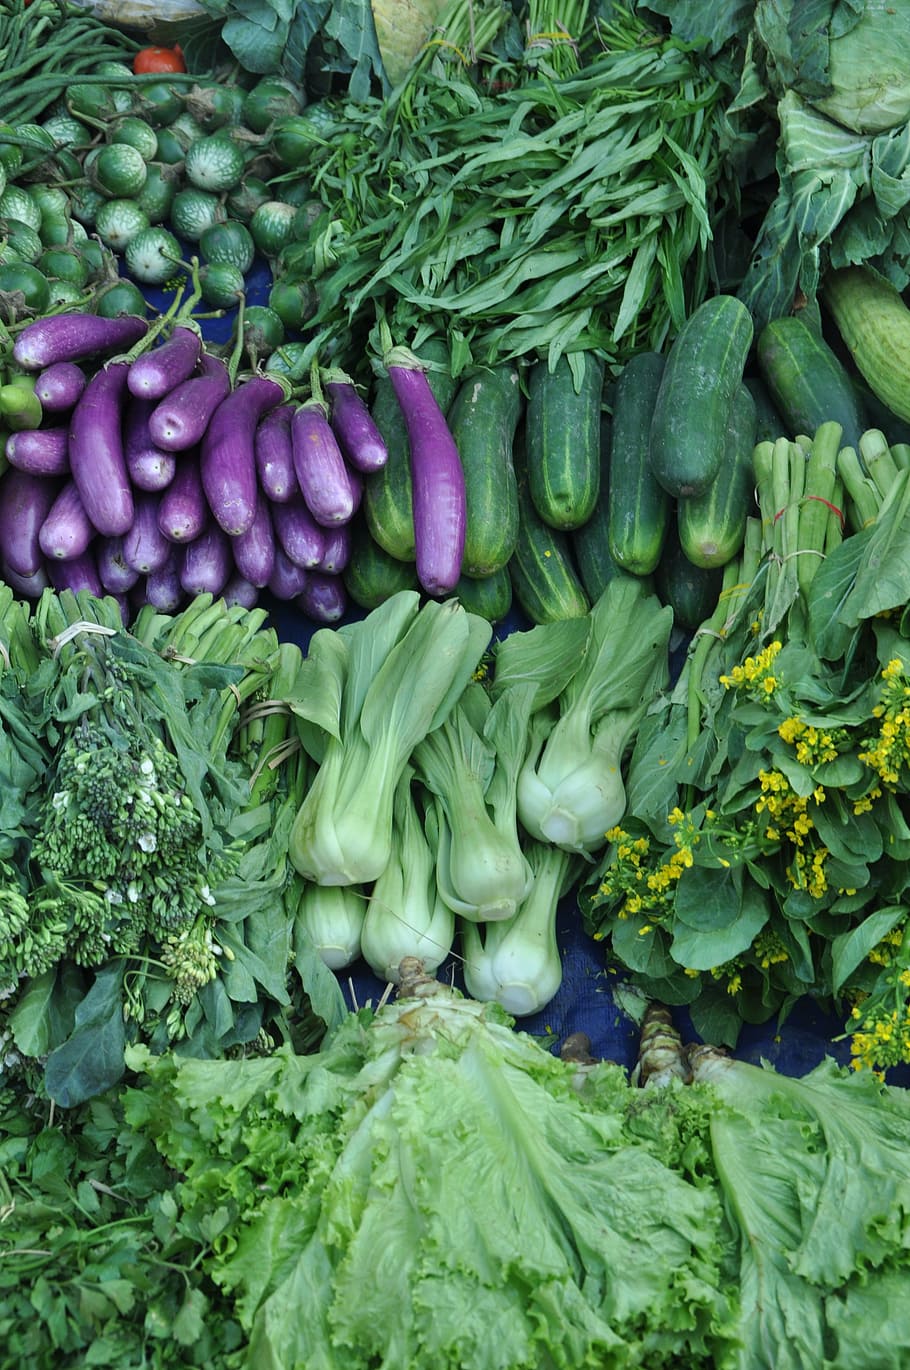 野菜, ナス, 食品, 健康, 栄養, バイオレット, クック, ベジタリアン, 鮮度, 市場